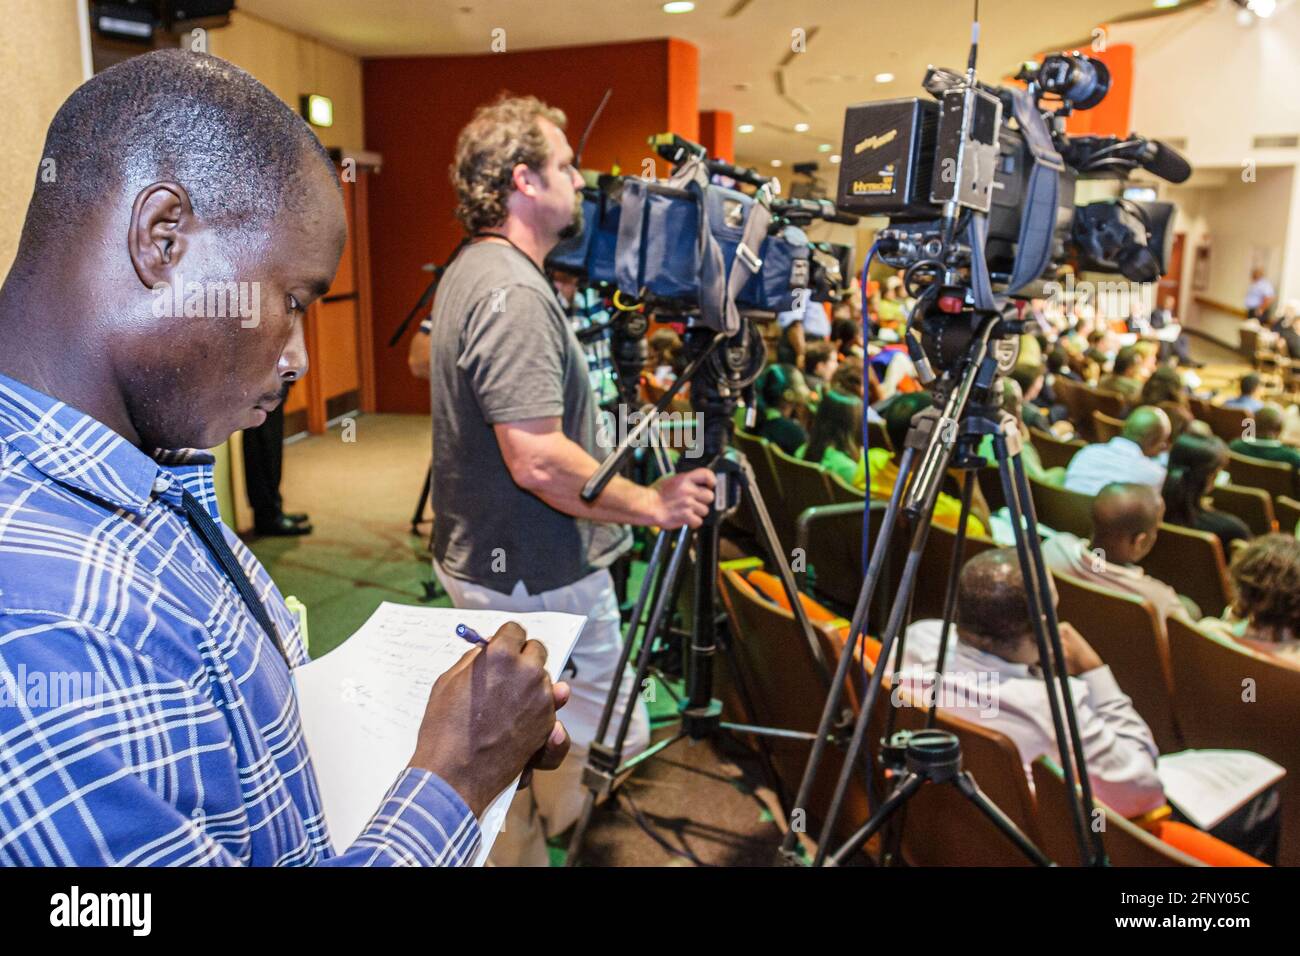 Miami Florida,riunione del Consiglio di Educazione,discutere di chiusura della scuola membri,uomo nero giornalista maschio reporter media,telecamere televisive, Foto Stock